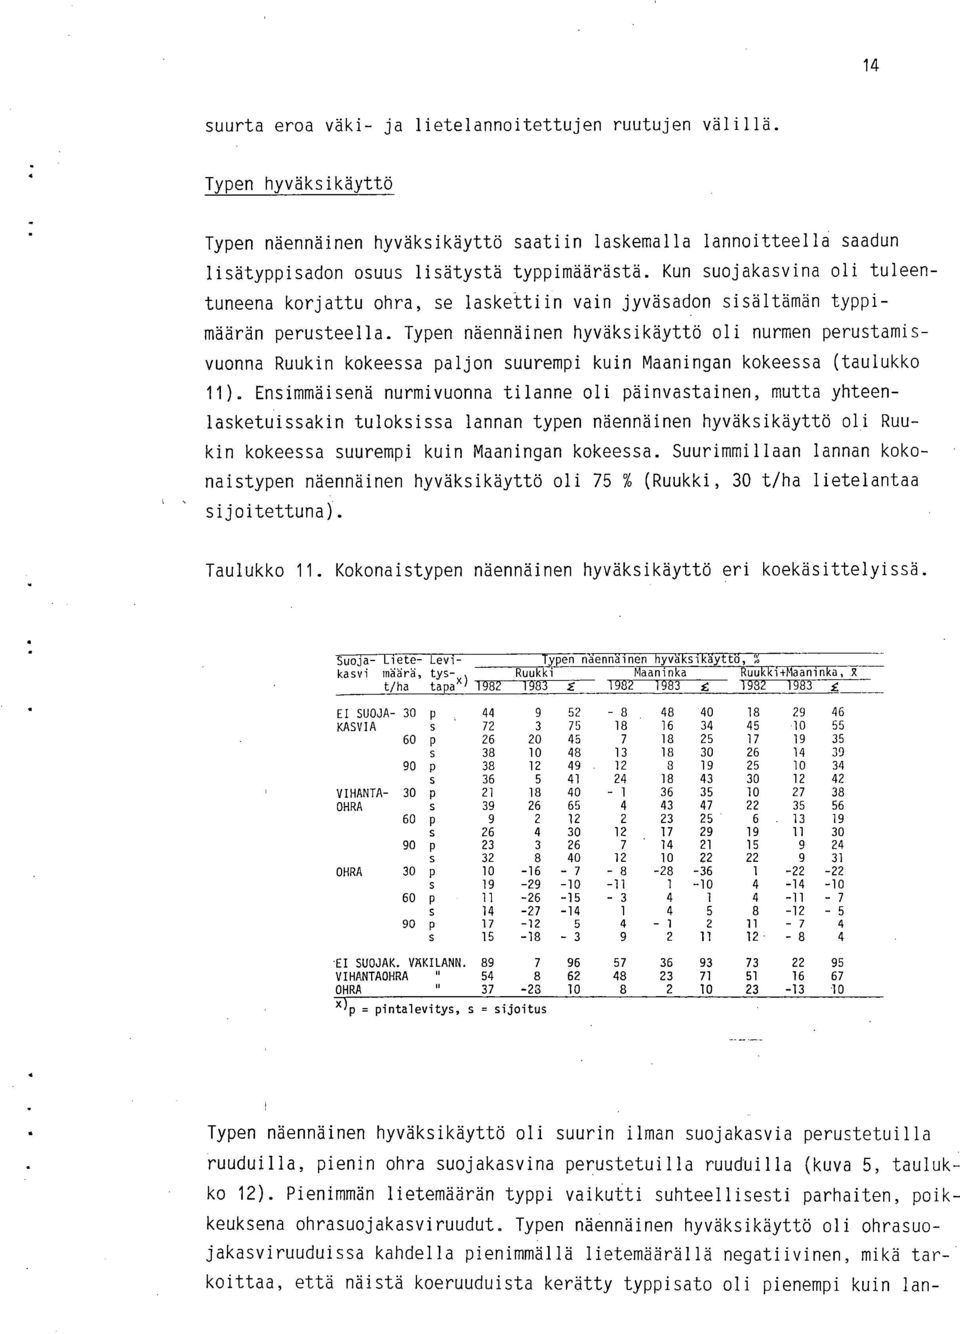 Typen näennäinen hyväksikäyttö oli nurmen perustamisvuonna Ruukin kokeessa paljon suurempi kuin Maaningan kokeessa (taulukko 11).